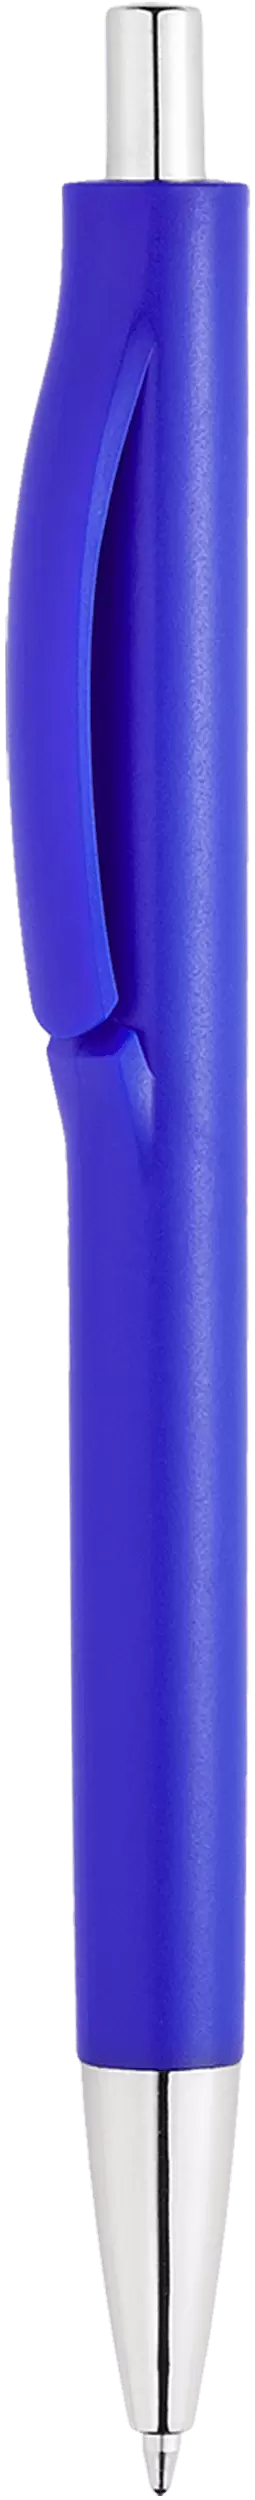 Ручка IGLA CHROME Синяя 1032-01